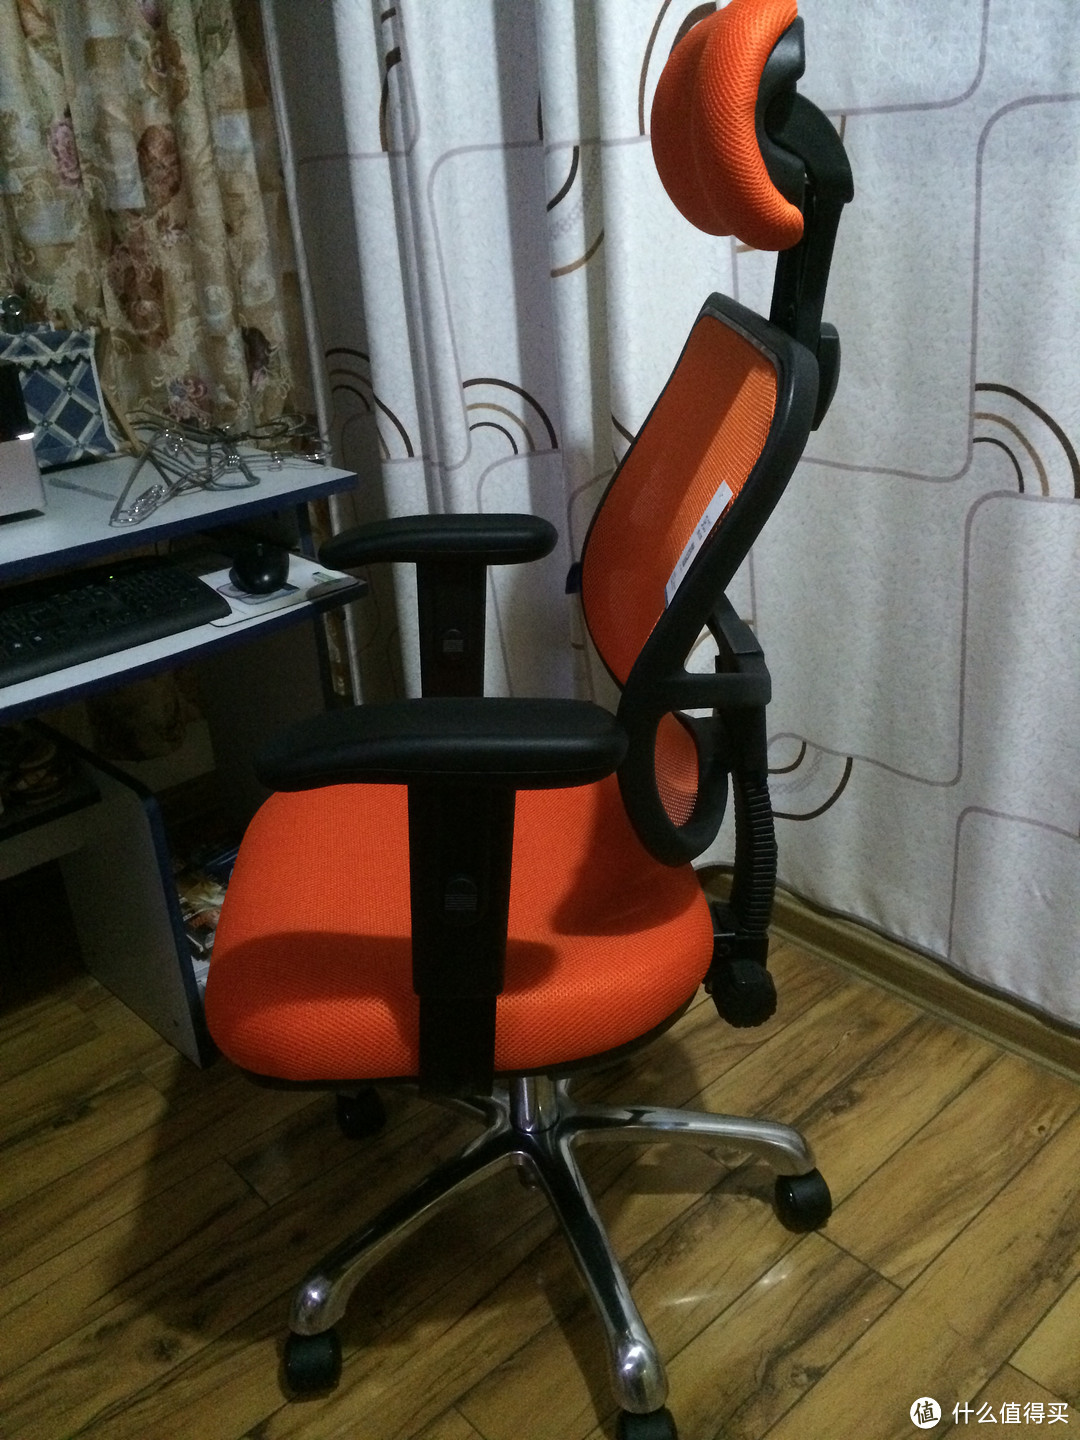 为了自己的老腰，来个电脑椅吧：西昊 M121 人体工程学电脑椅